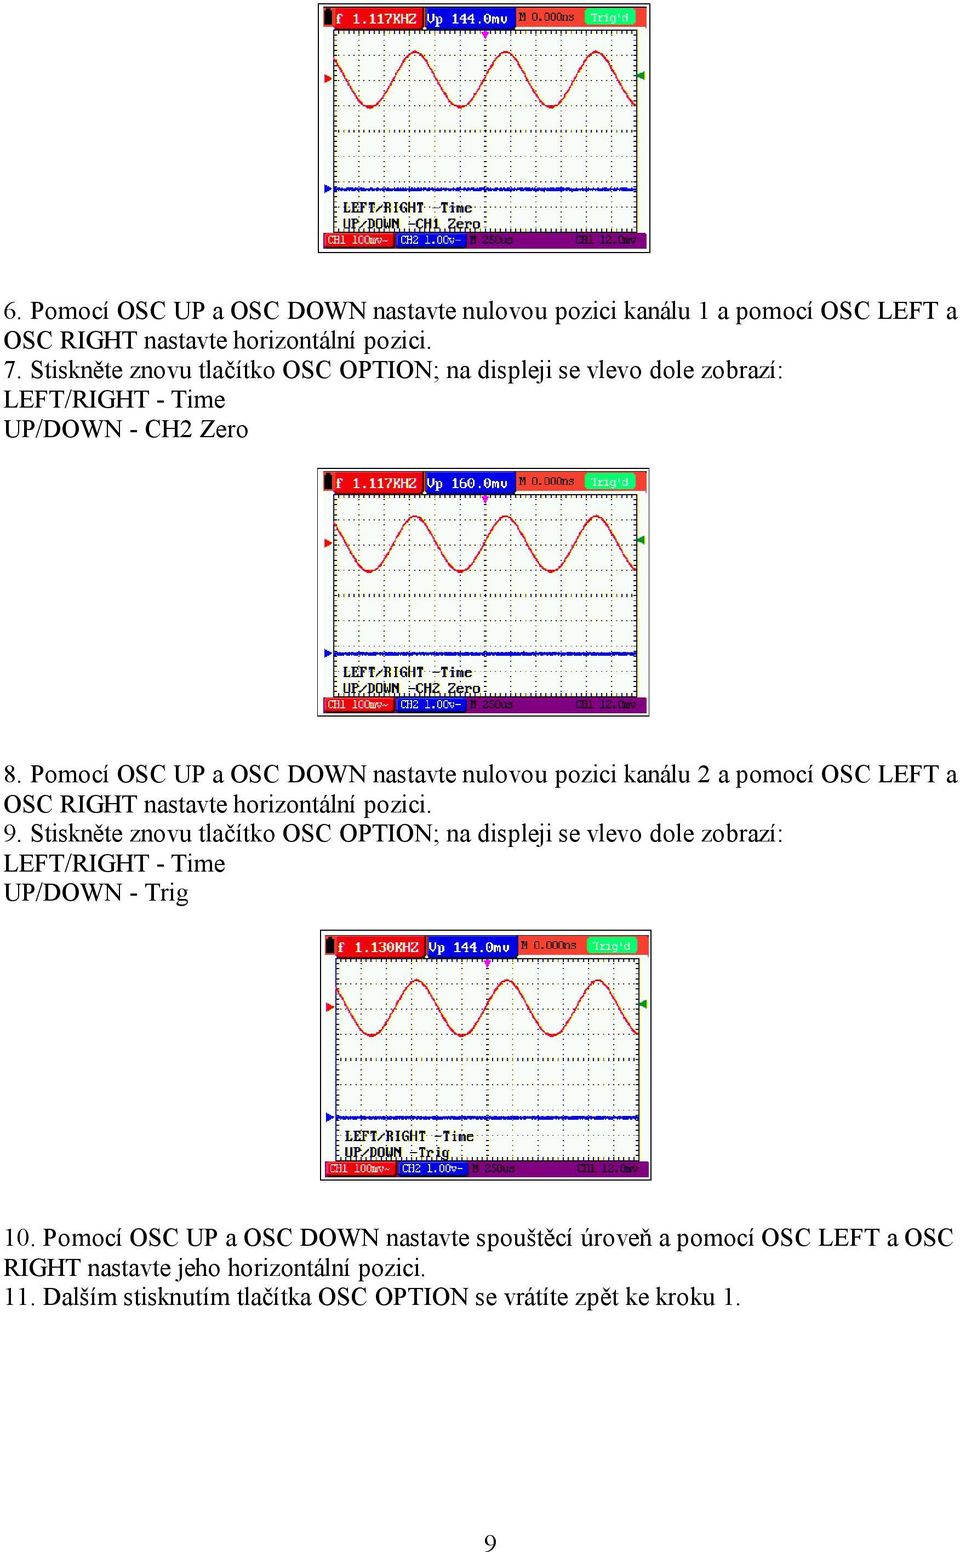 Pomocí OSC UP a OSC DOWN nastavte nulovou pozici kanálu 2 a pomocí OSC LEFT a OSC RIGHT nastavte horizontální pozici. 9.